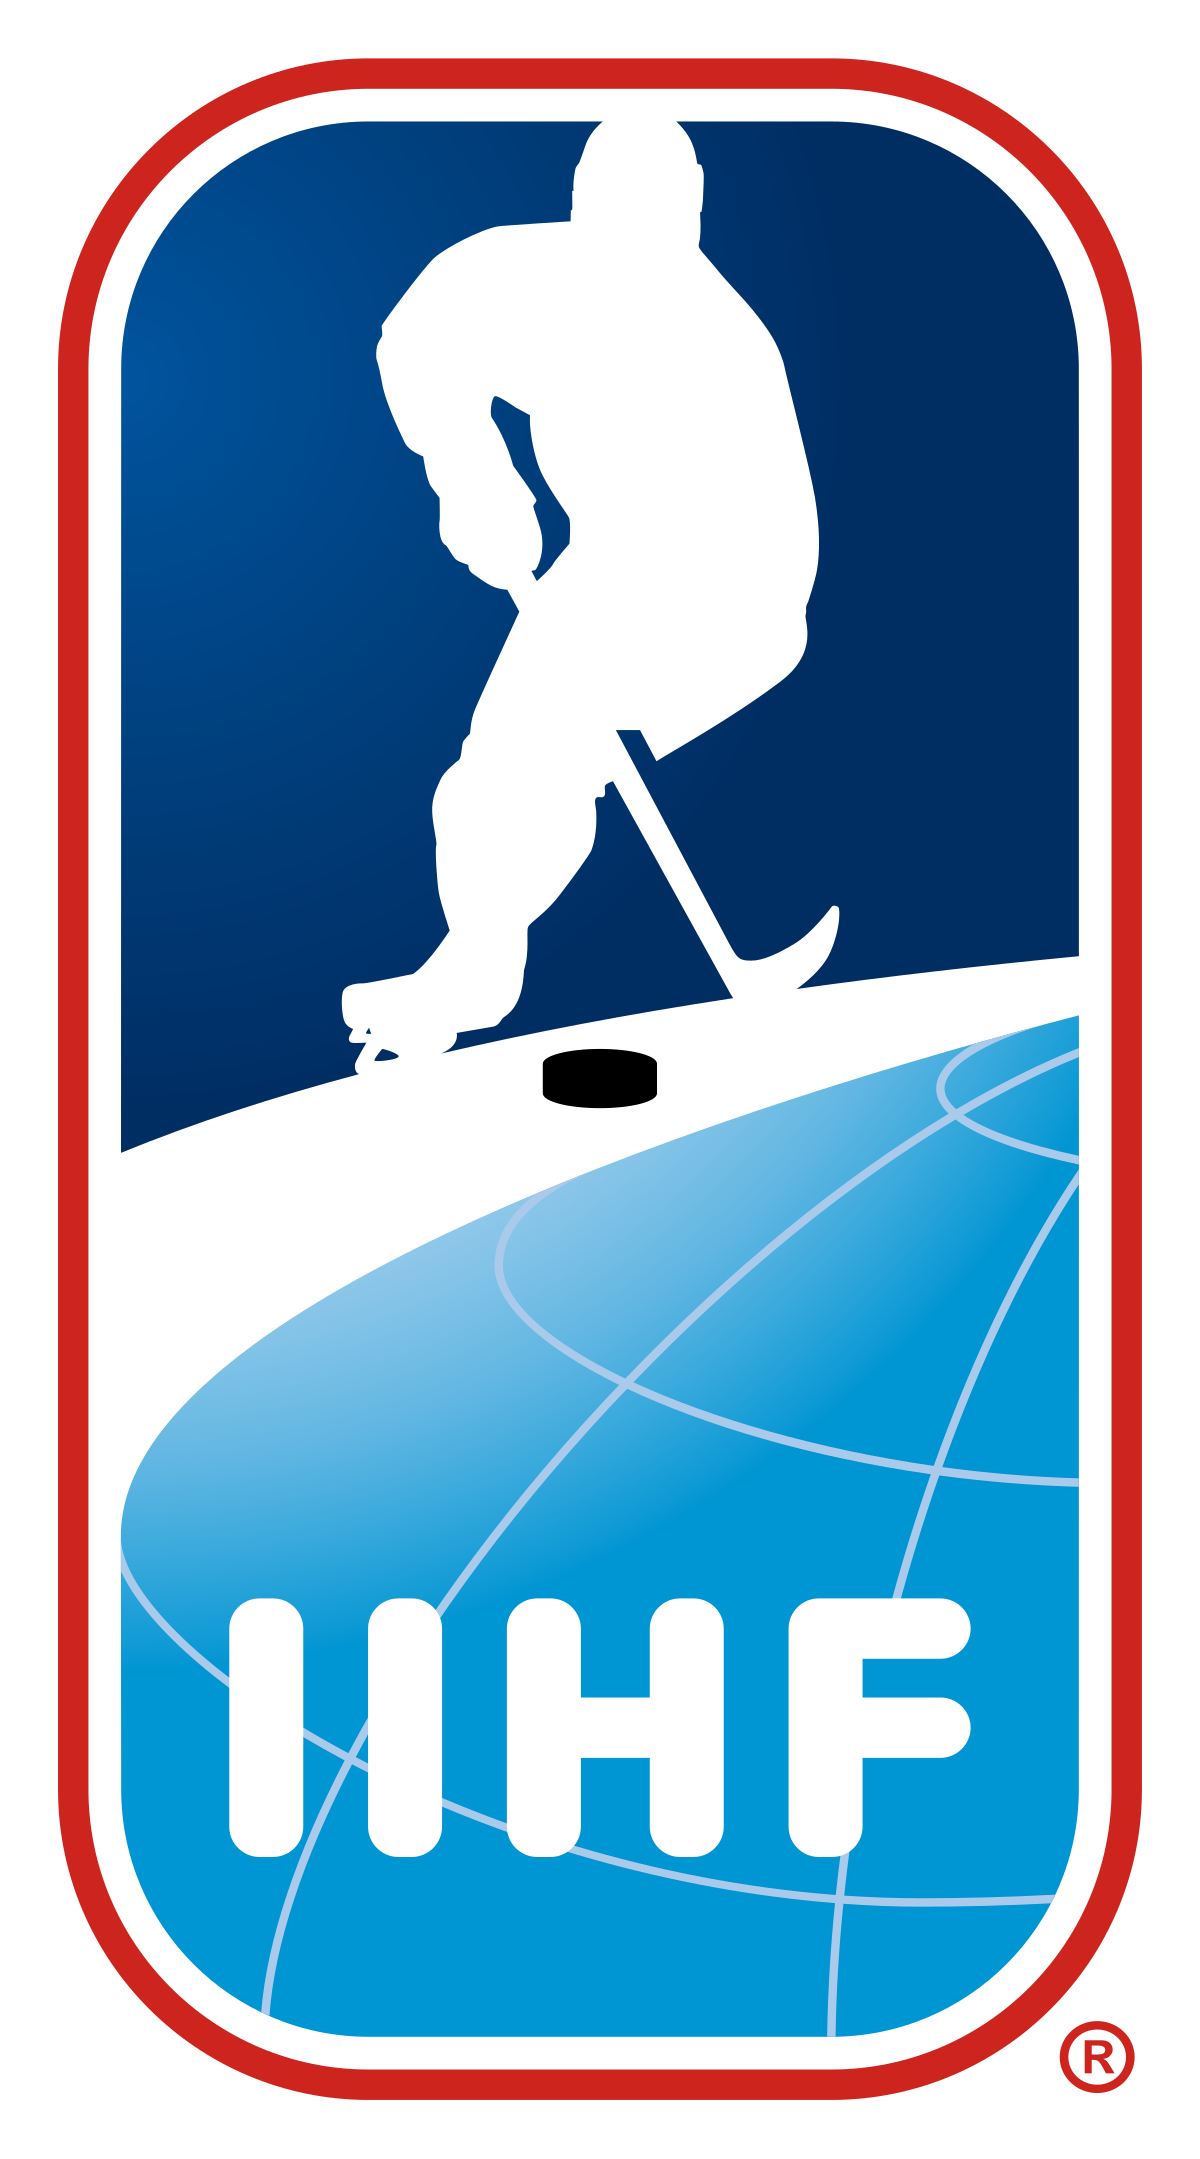 Ice hockey - Wikipedia